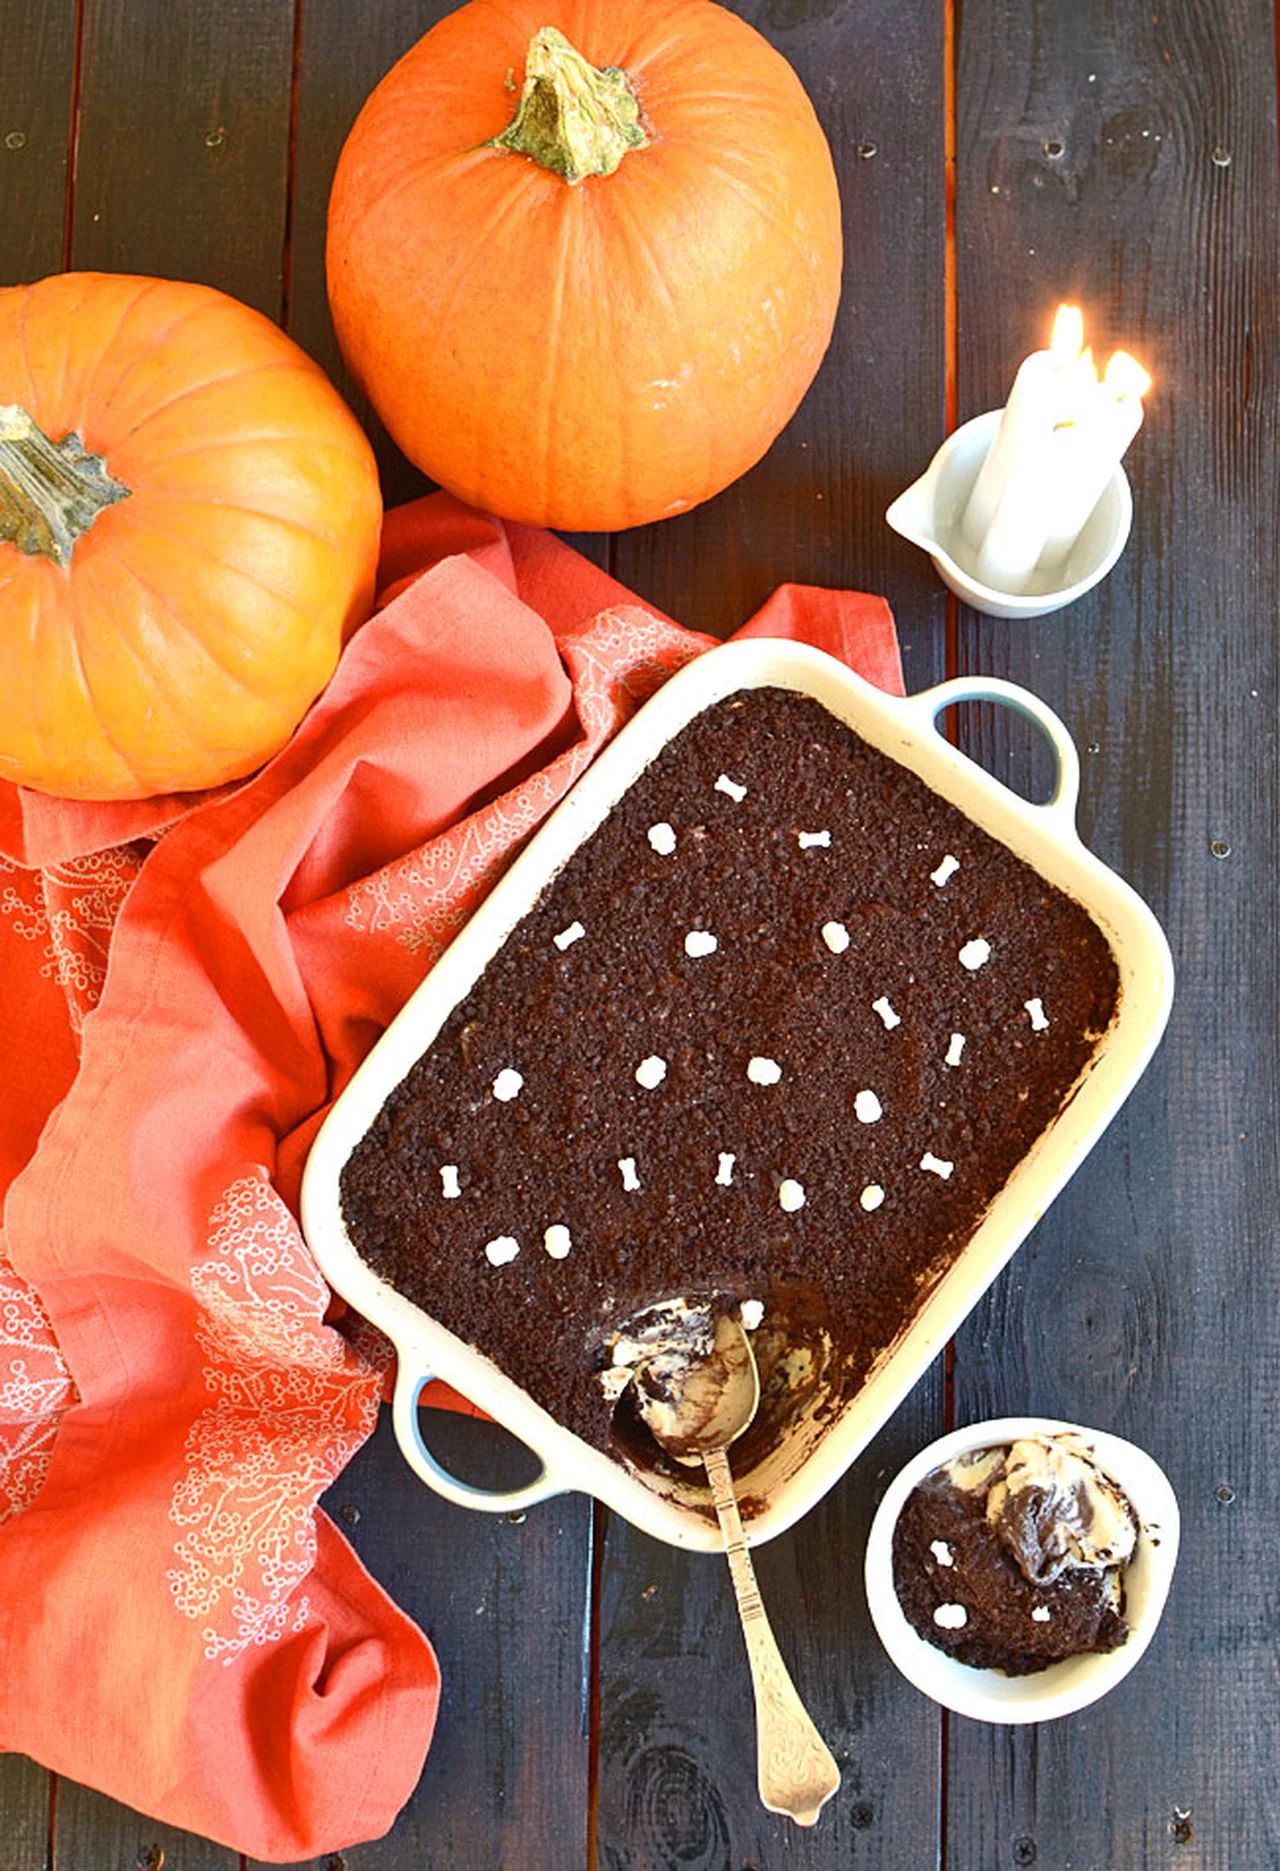 Ziemisty deser, czyli dirt cake - dobry na Halloween, ale też dla każdego ogrodnika ;)